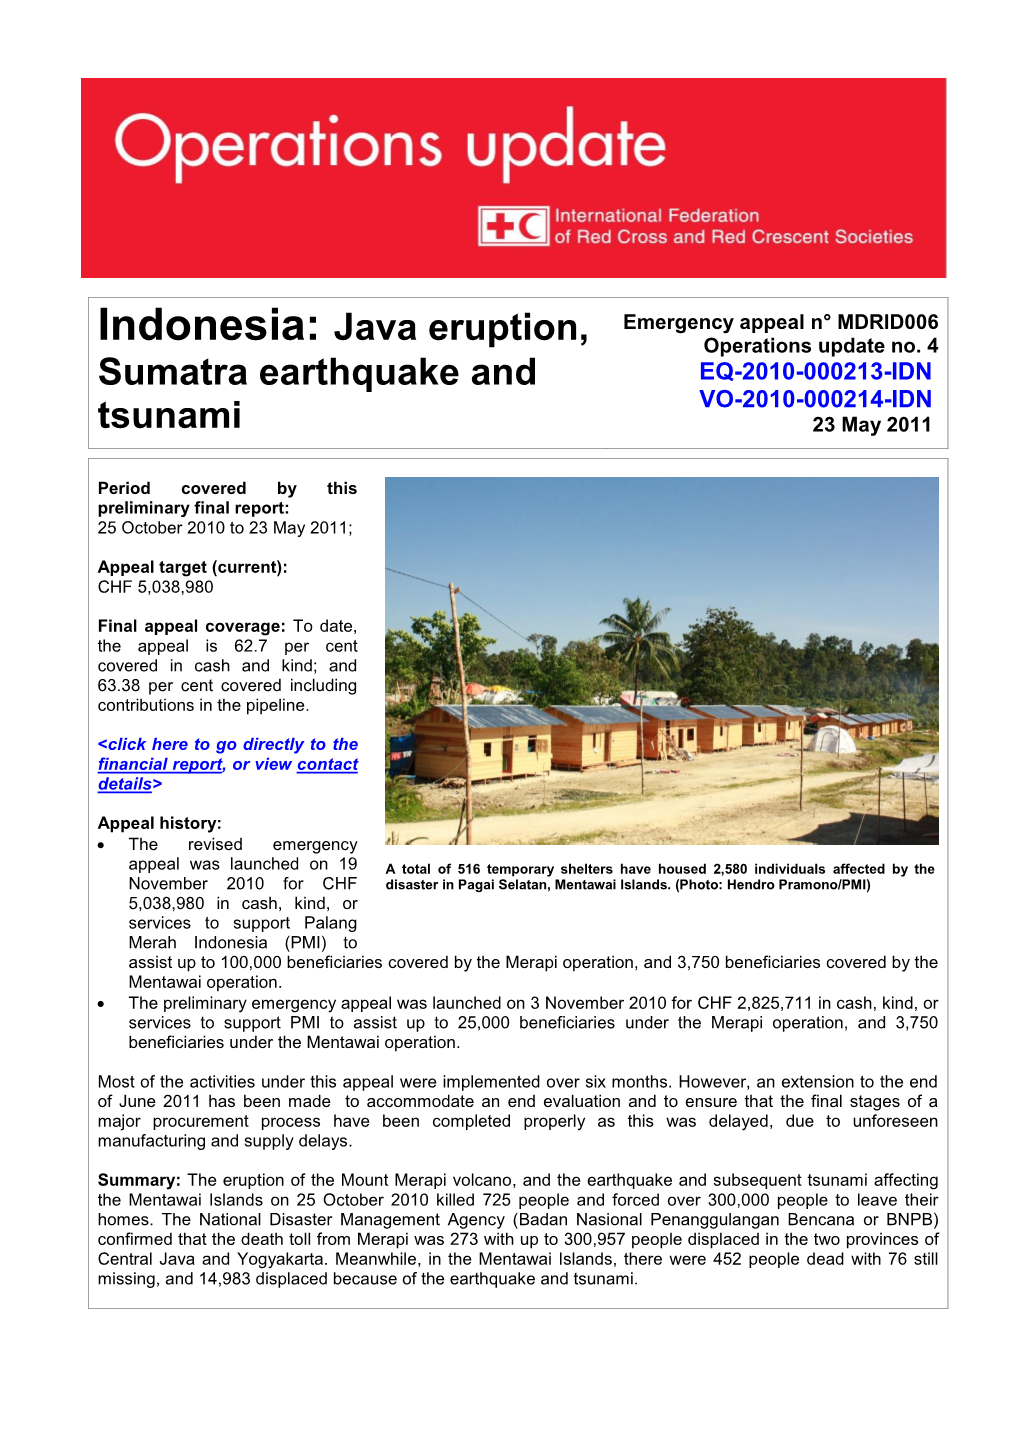 Indonesia: Java Eruption, Sumatra Earthquake and Tsunami